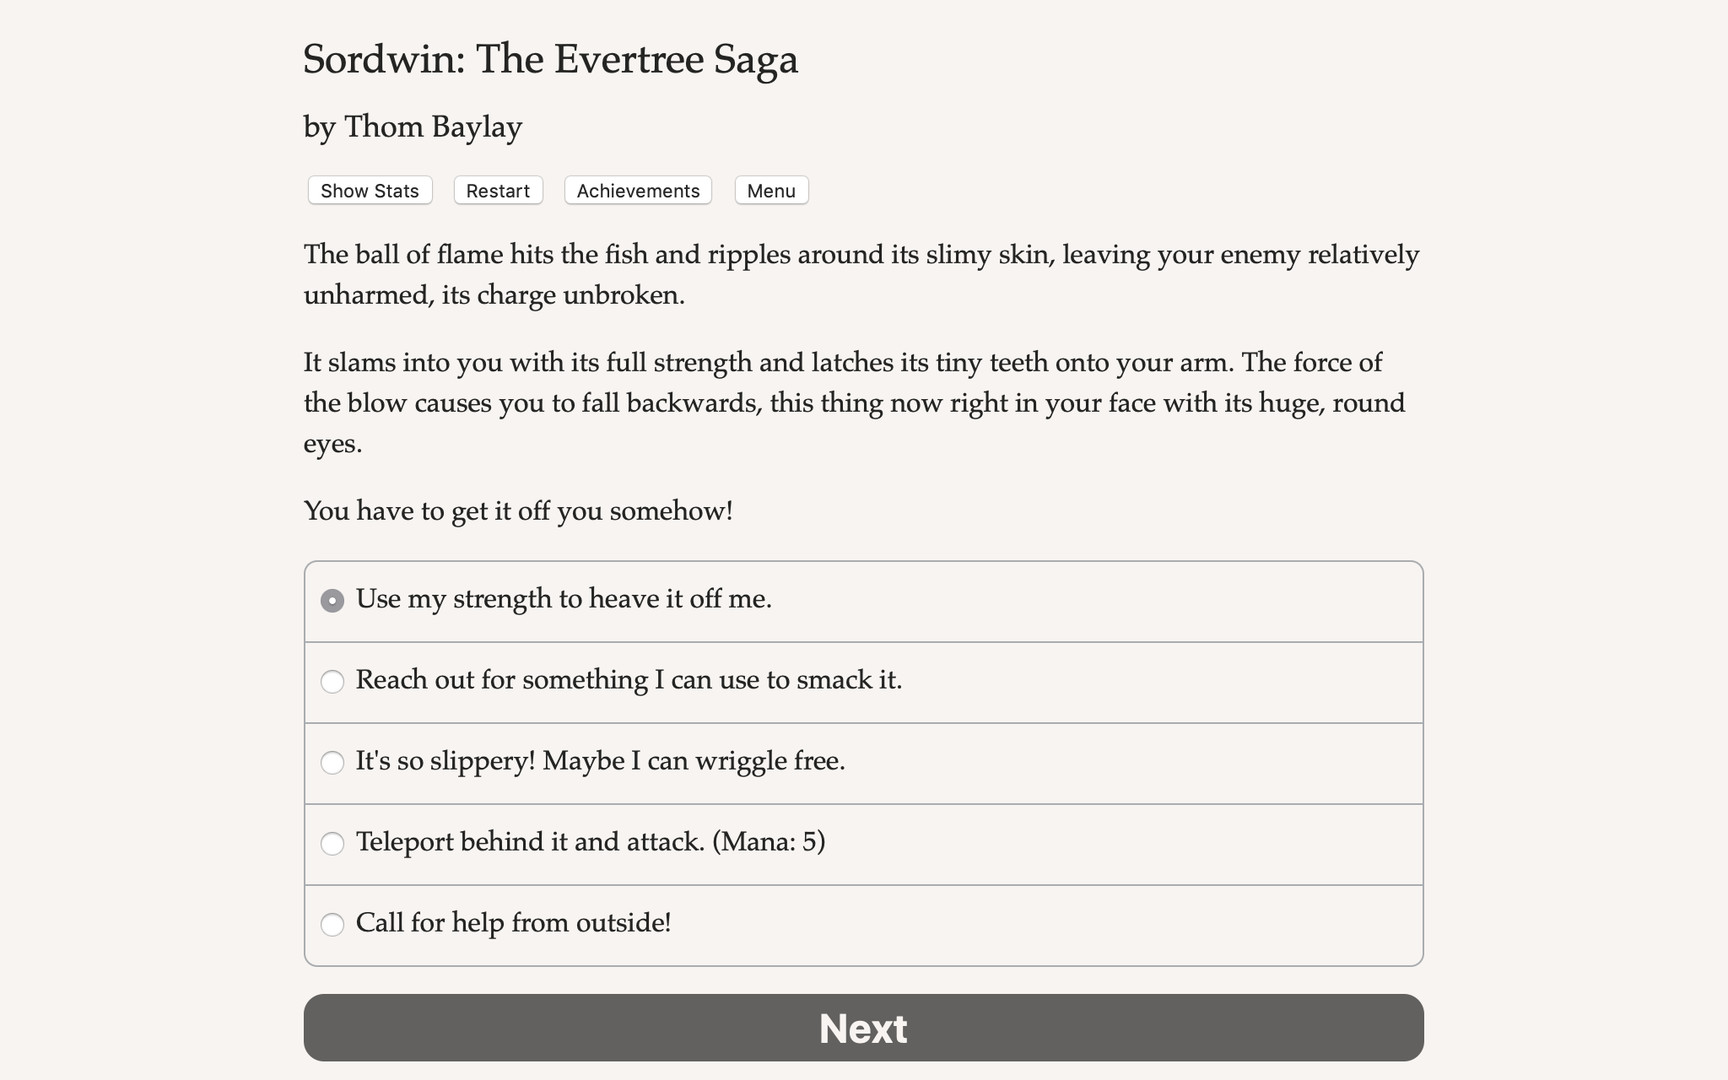 Sordwin: The Evertree Saga Free Download